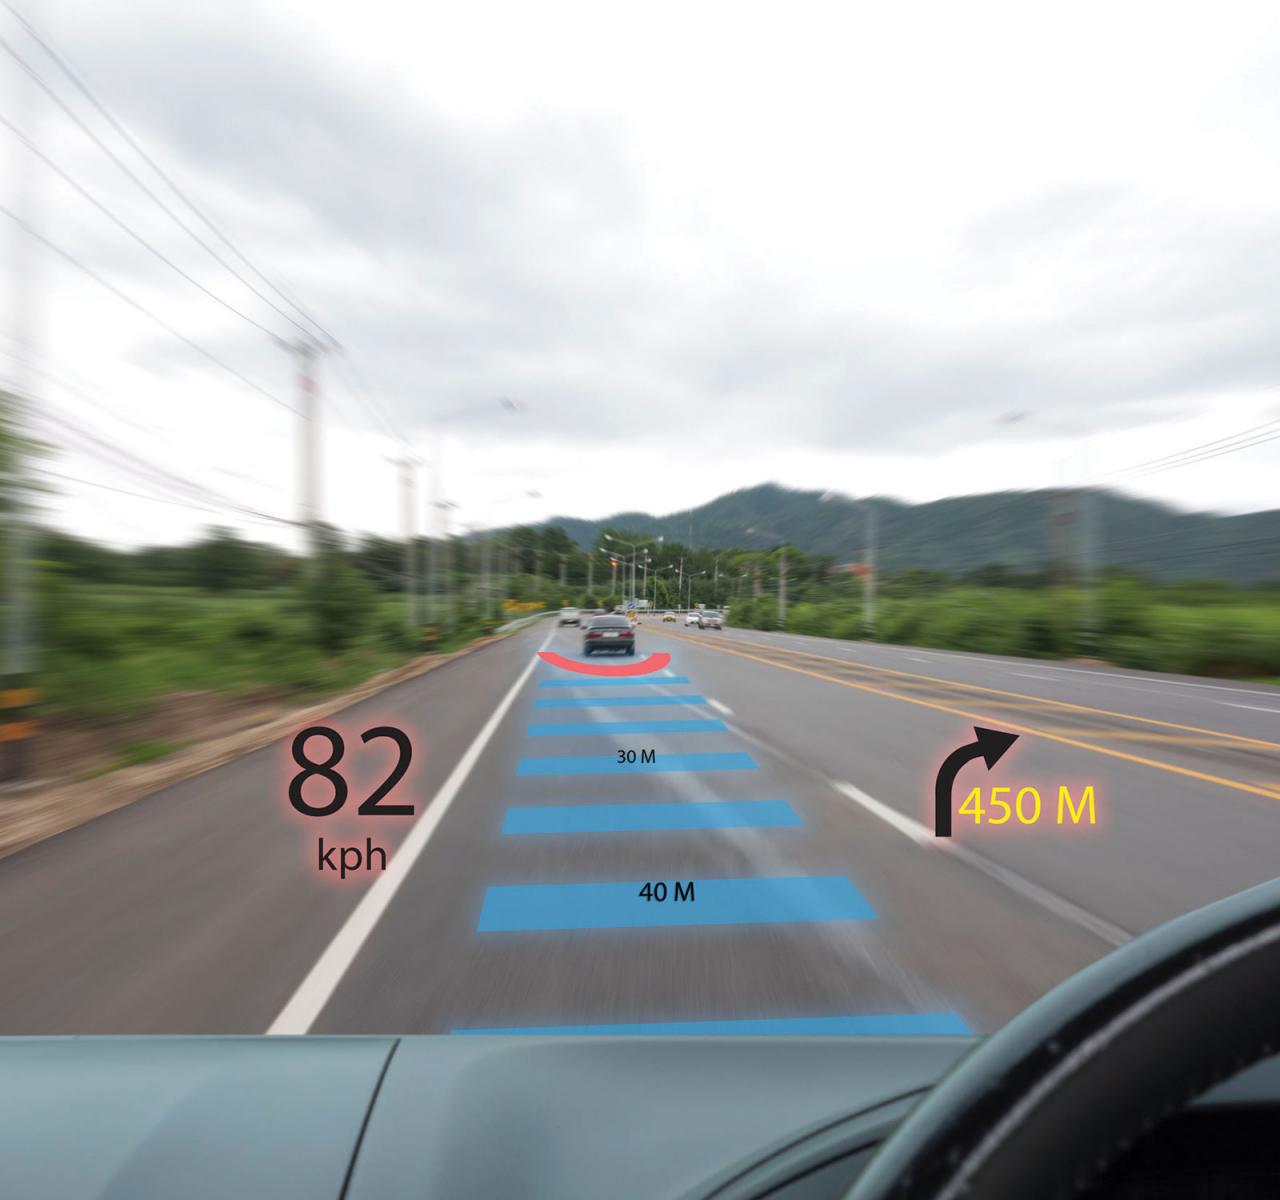 远距离前瞻性LIDAR对于实现自动驾驶汽车的部署至关重要